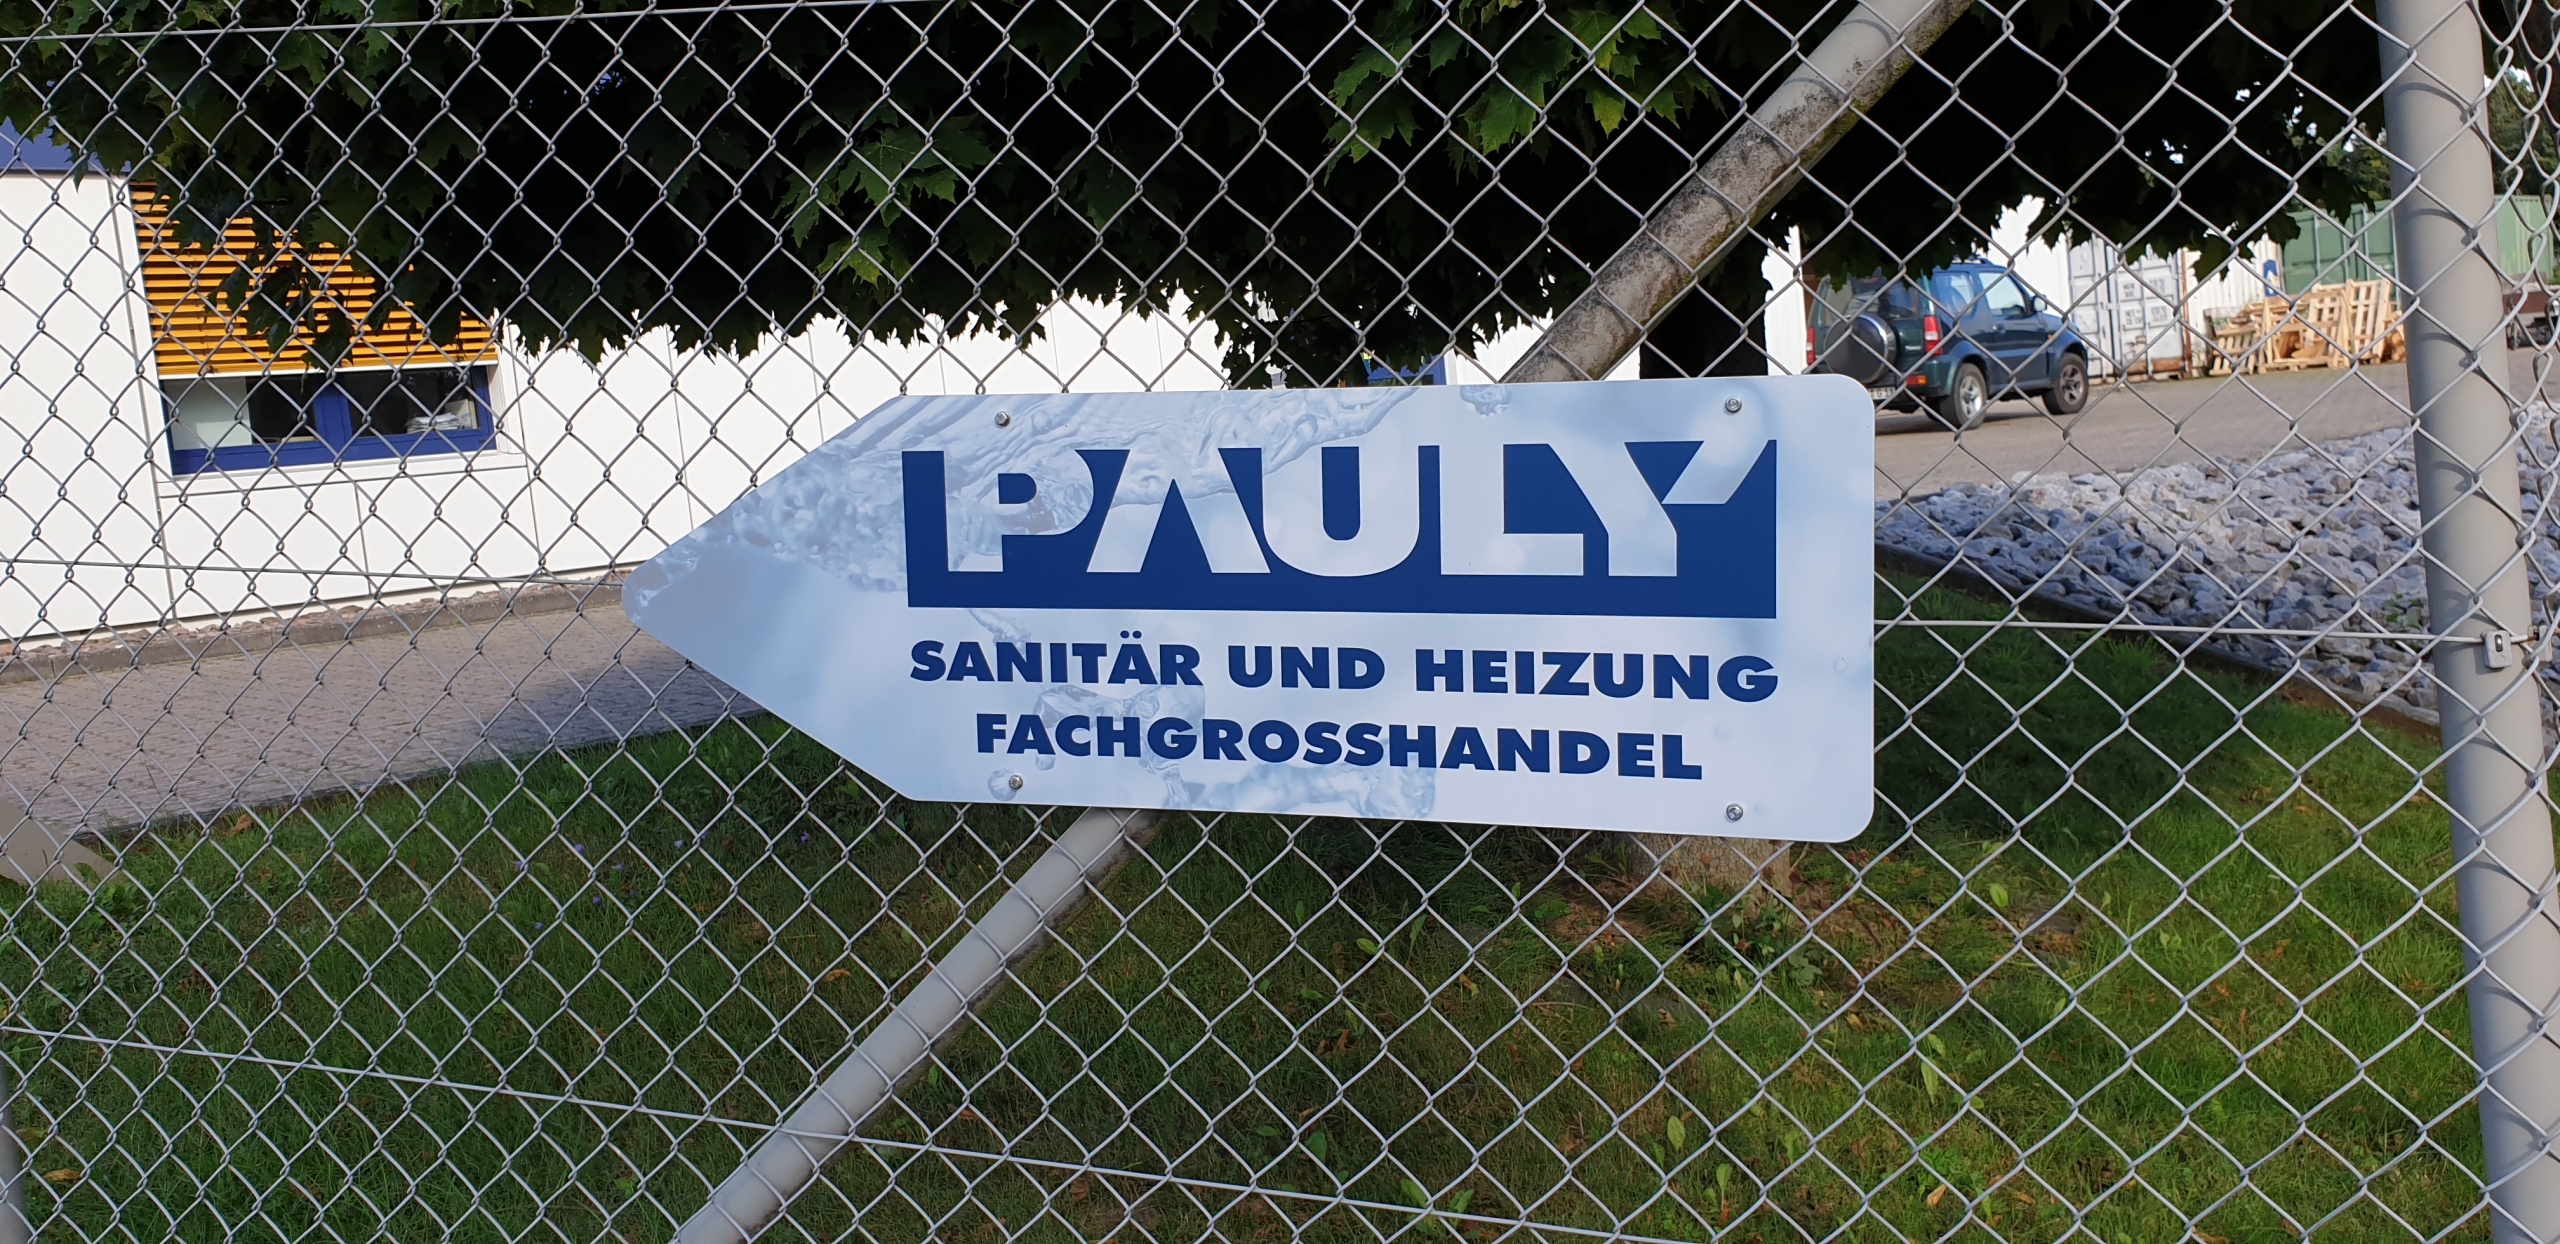 Die Firma Pauly aus Alfeld präsentiert sich im einheitlichen Design und hat in dem Zug ihre Hinweisschilder aktualisiert.